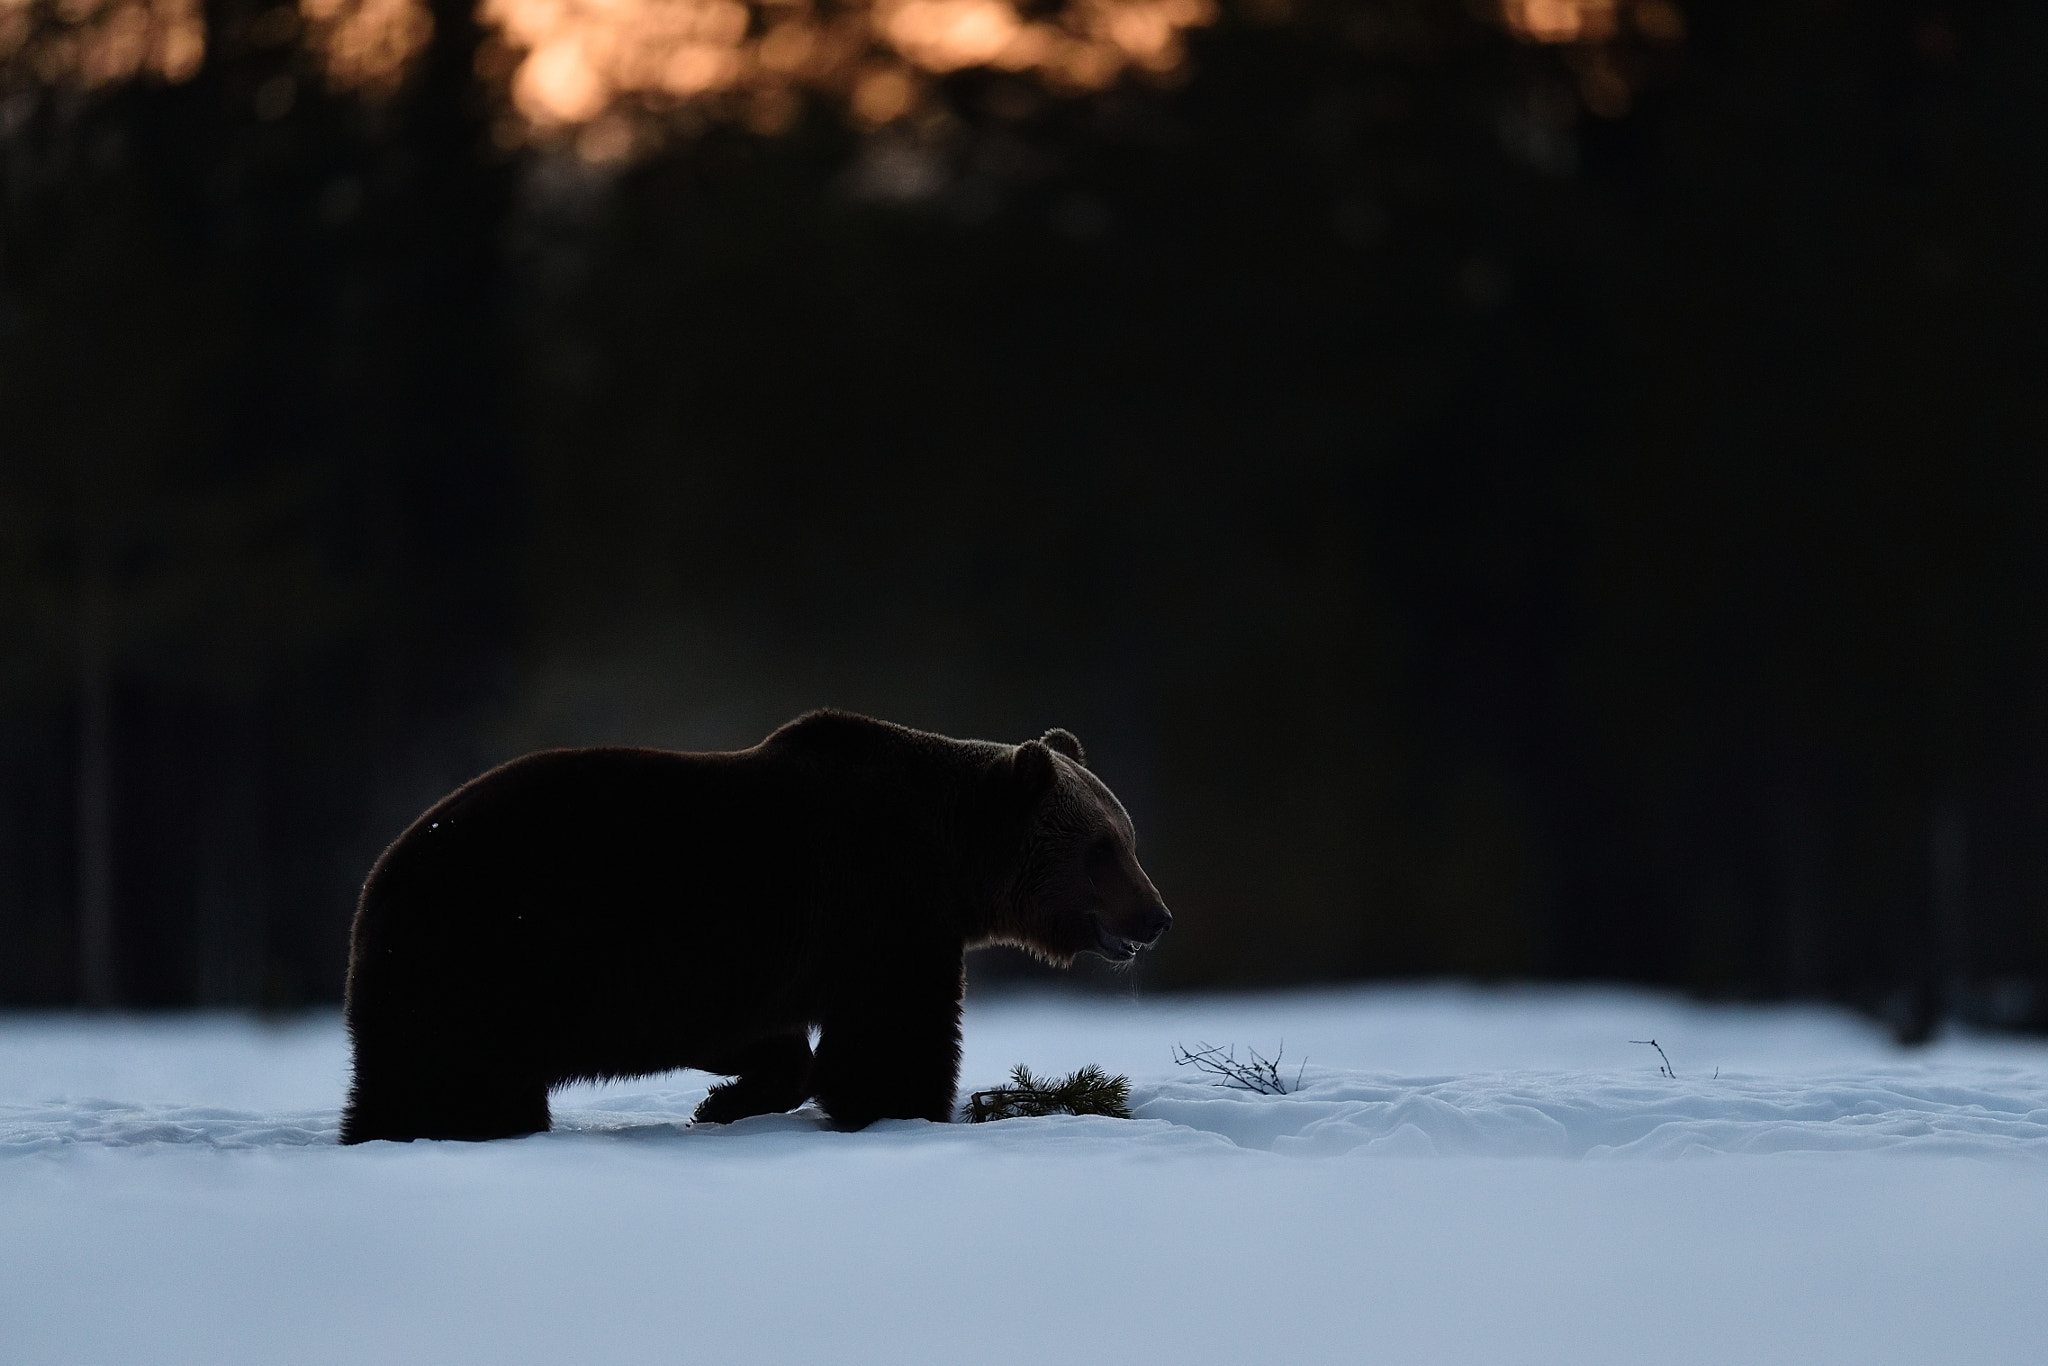 Nikon AF-S Nikkor 400mm F2.8G ED VR II sample photo. Brown bear walking on snow at sunset photography